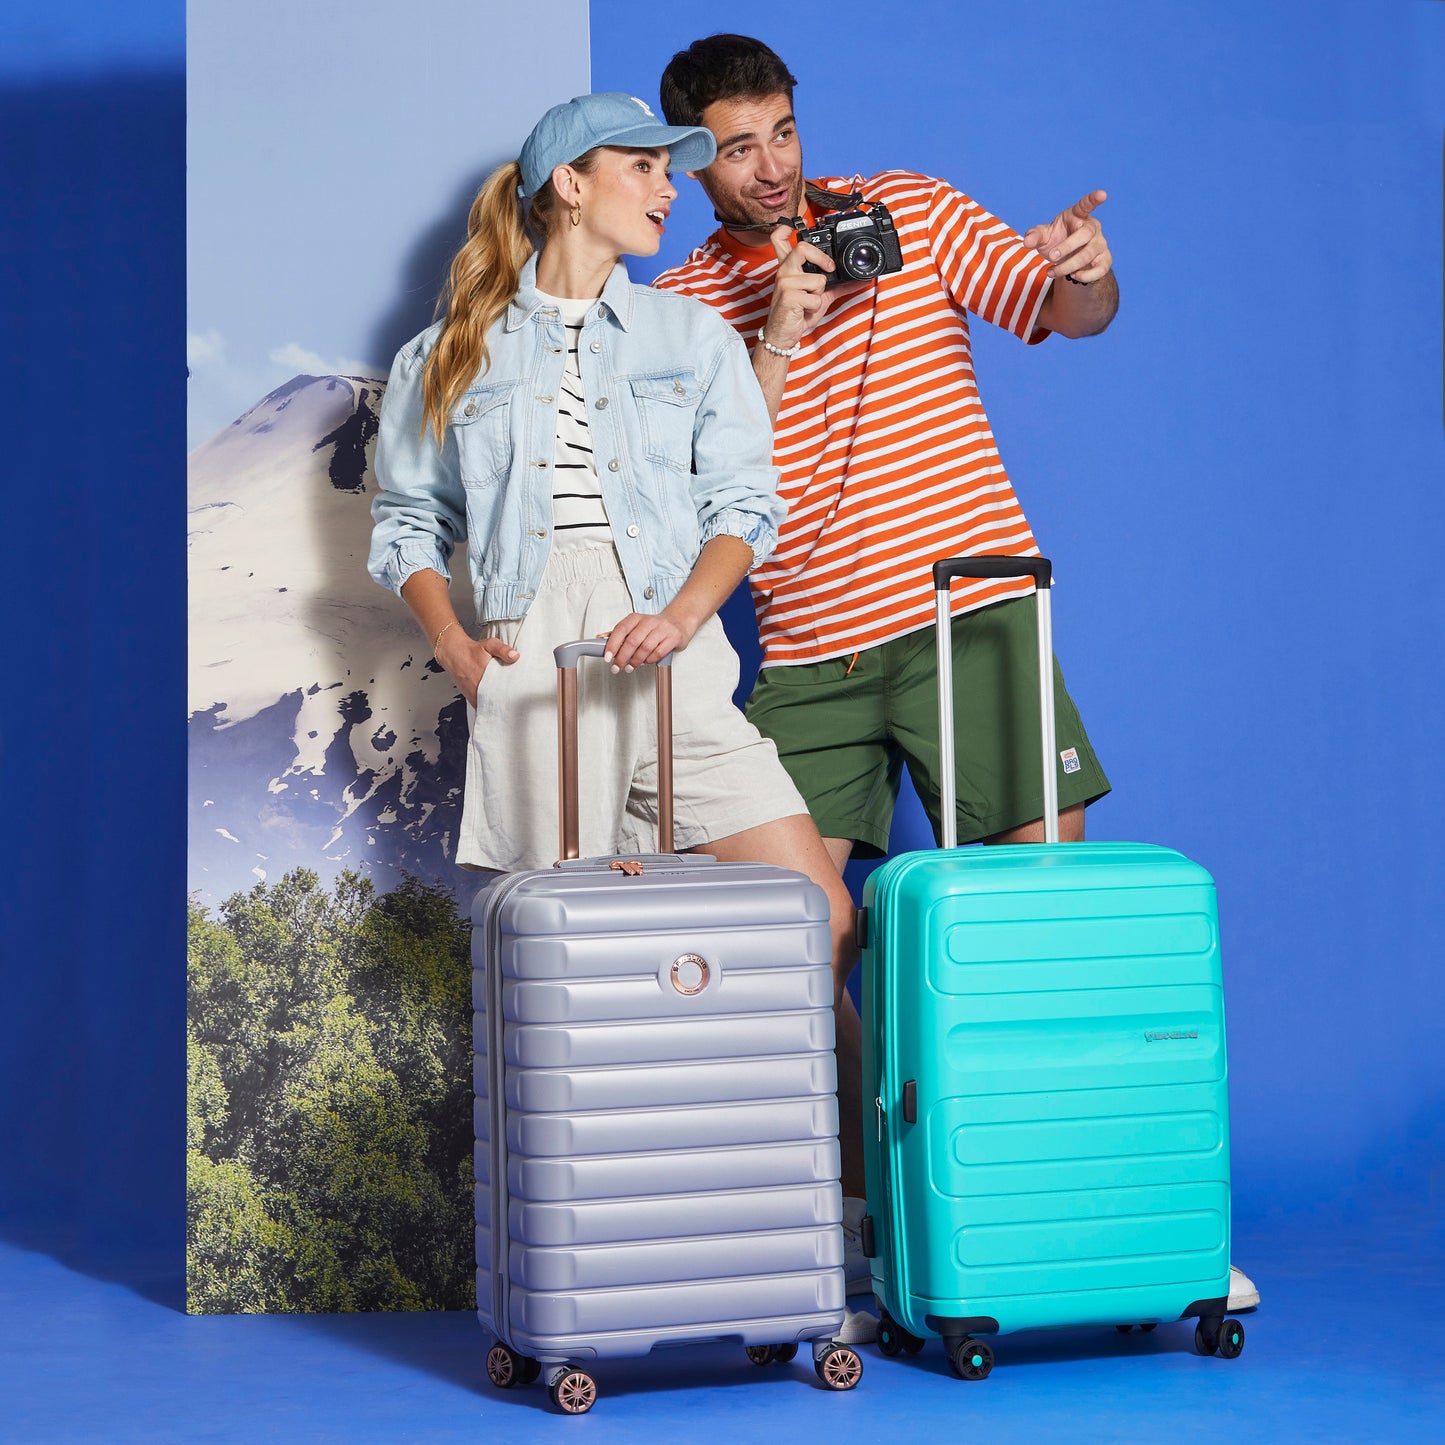 Maleta mediana: Los 5 Mejores Productos de Viaje: La maleta